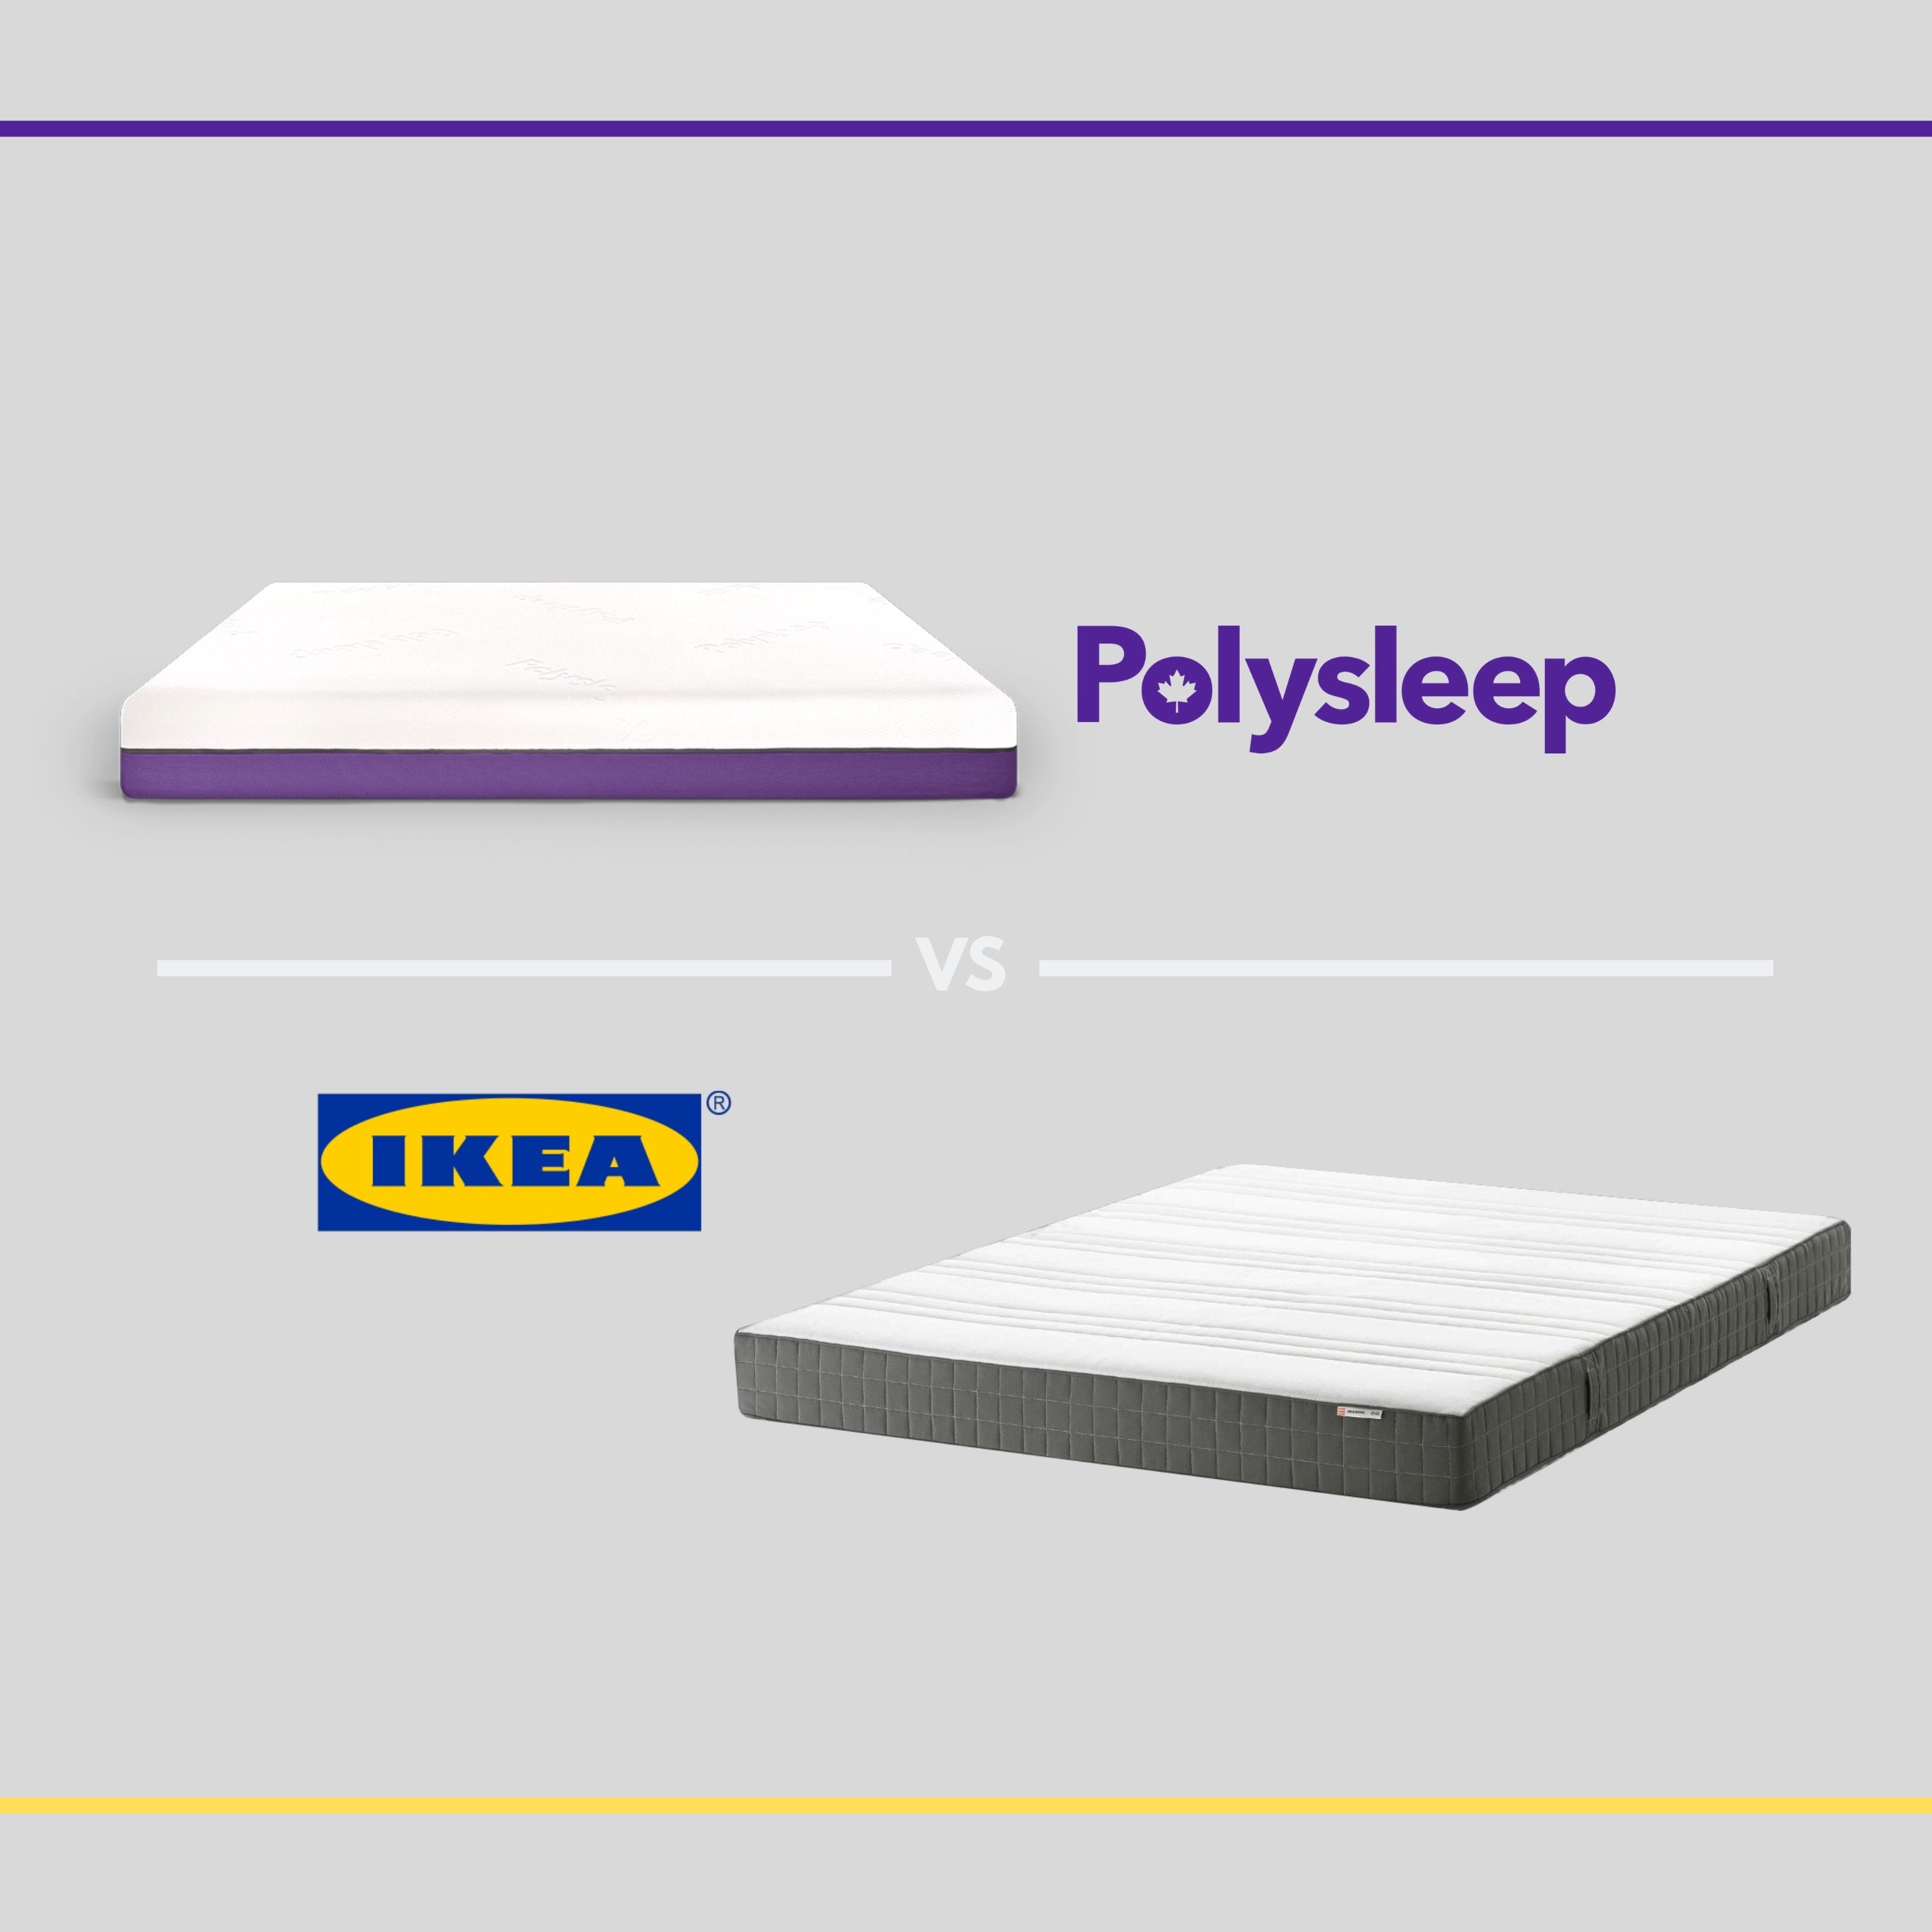 The Ikea foam mattress vs the Polysleep mattress